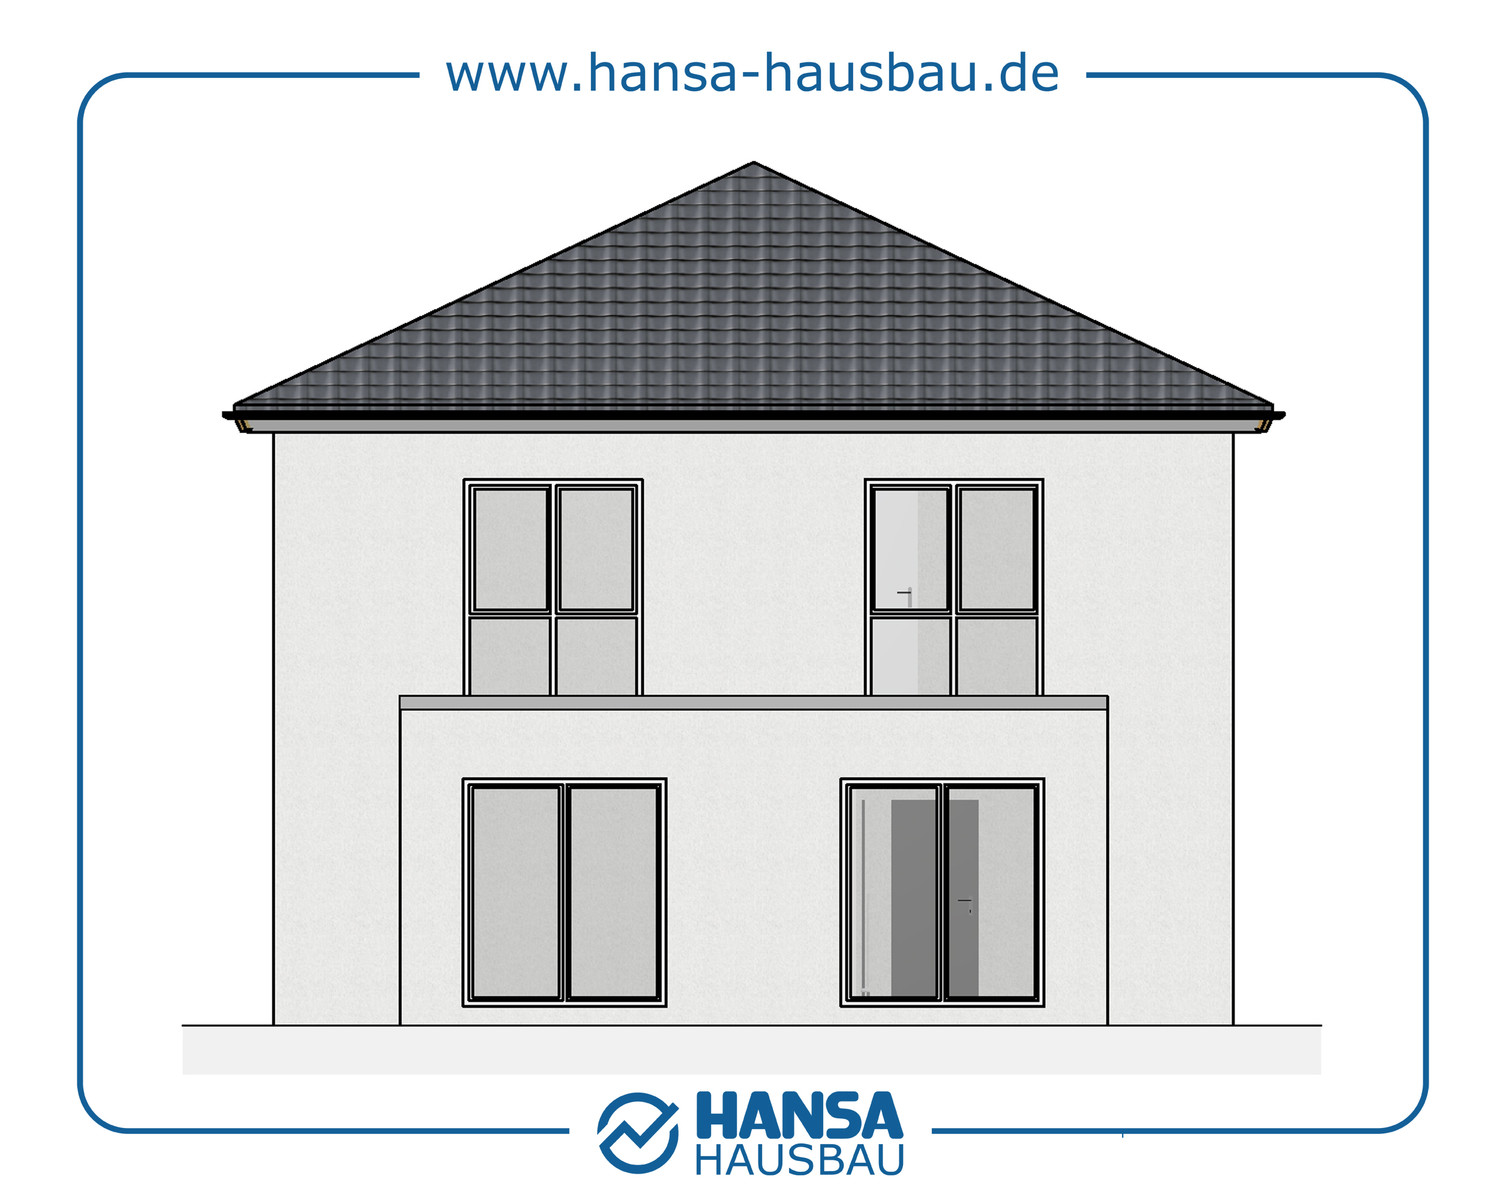 Hansa Hausbau Stadtvilla 144 M² Neubau Hamburg 01